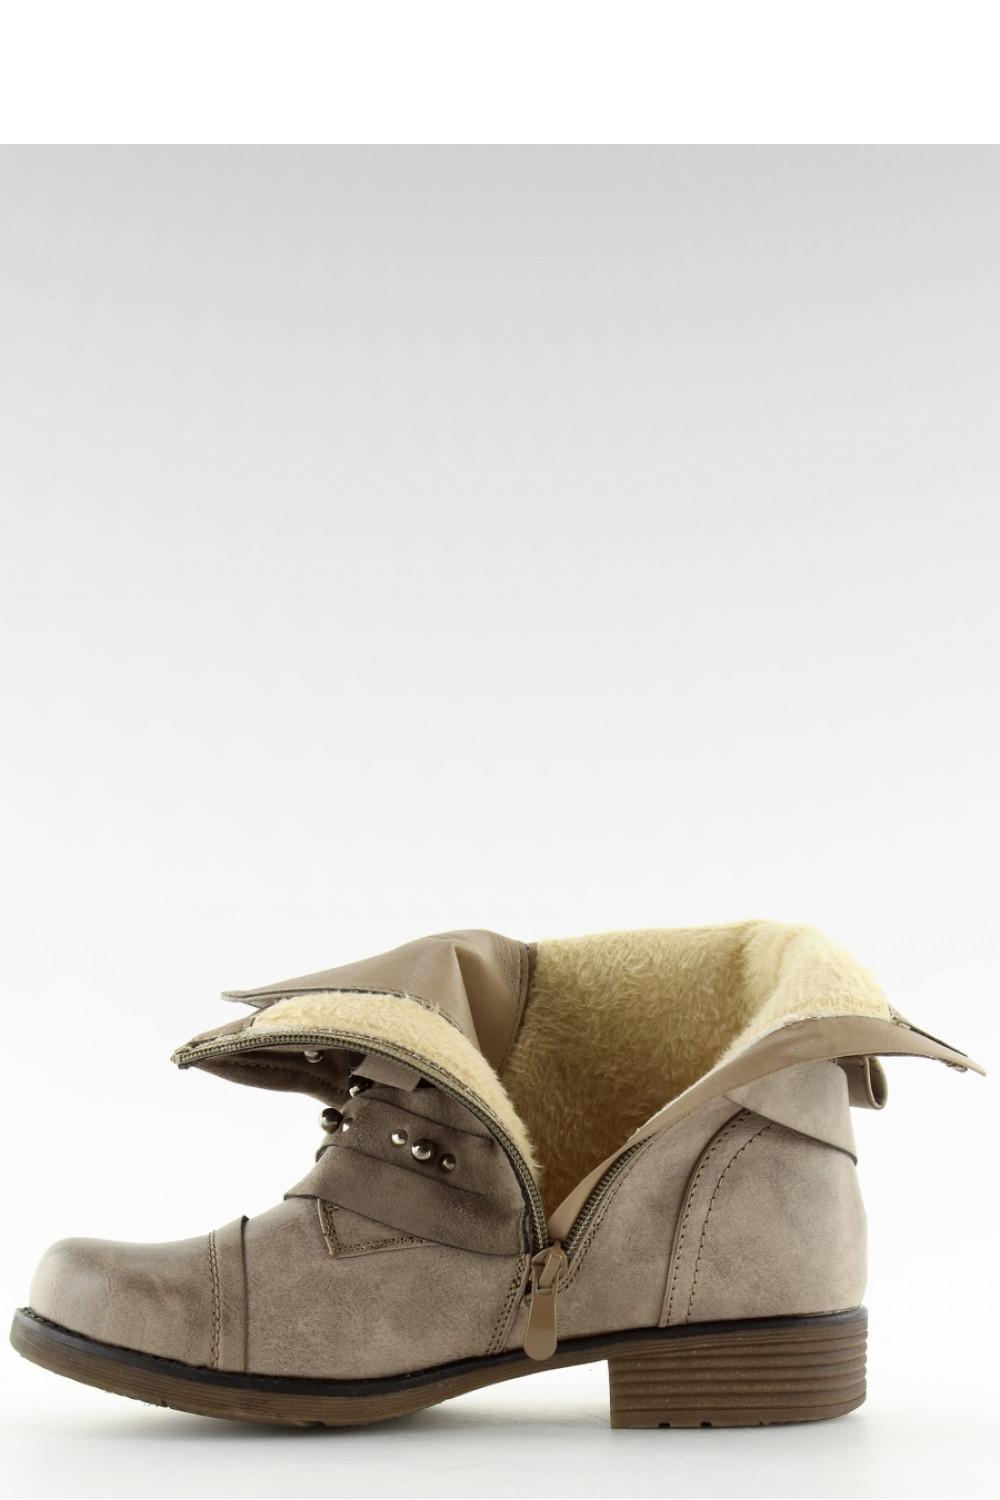 Dámské kotníkové boty 17103 - BESTELLE khaki-béžová 37